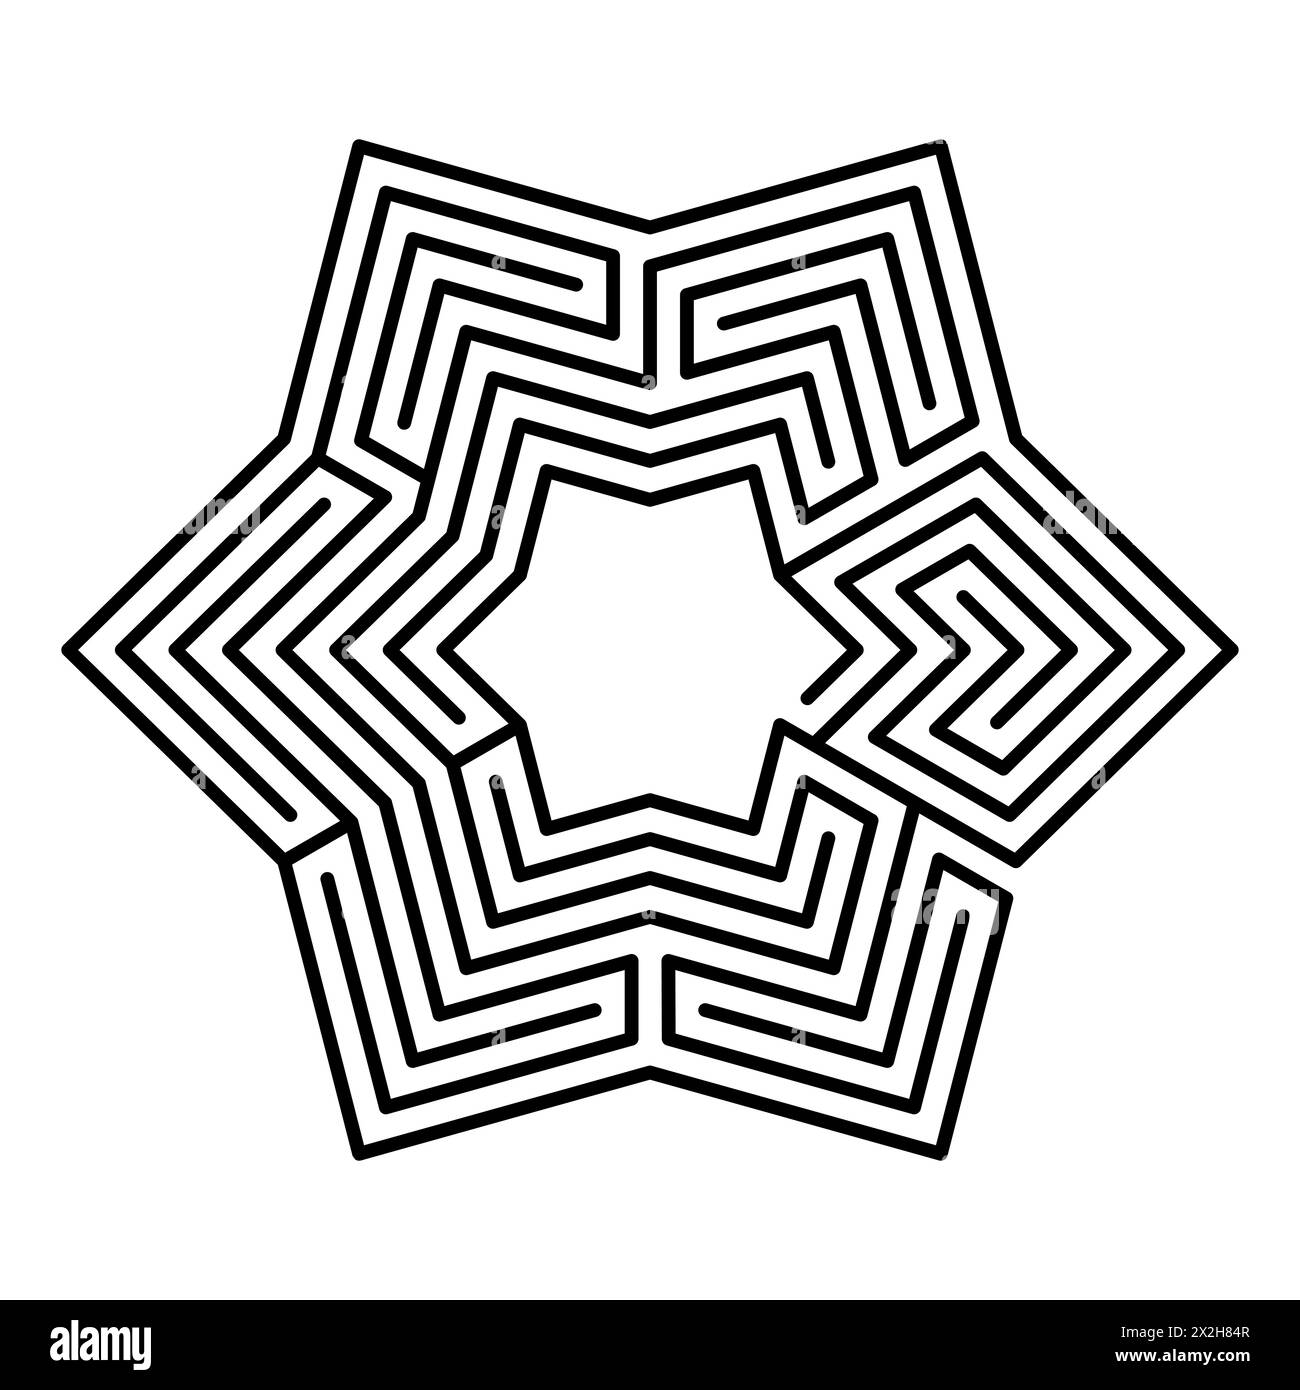 Labirinto esagonale, a forma di stella, labirinto a sei punte in sette percorsi, con una raccolta di sentieri dall'ingresso alla porta. Foto Stock